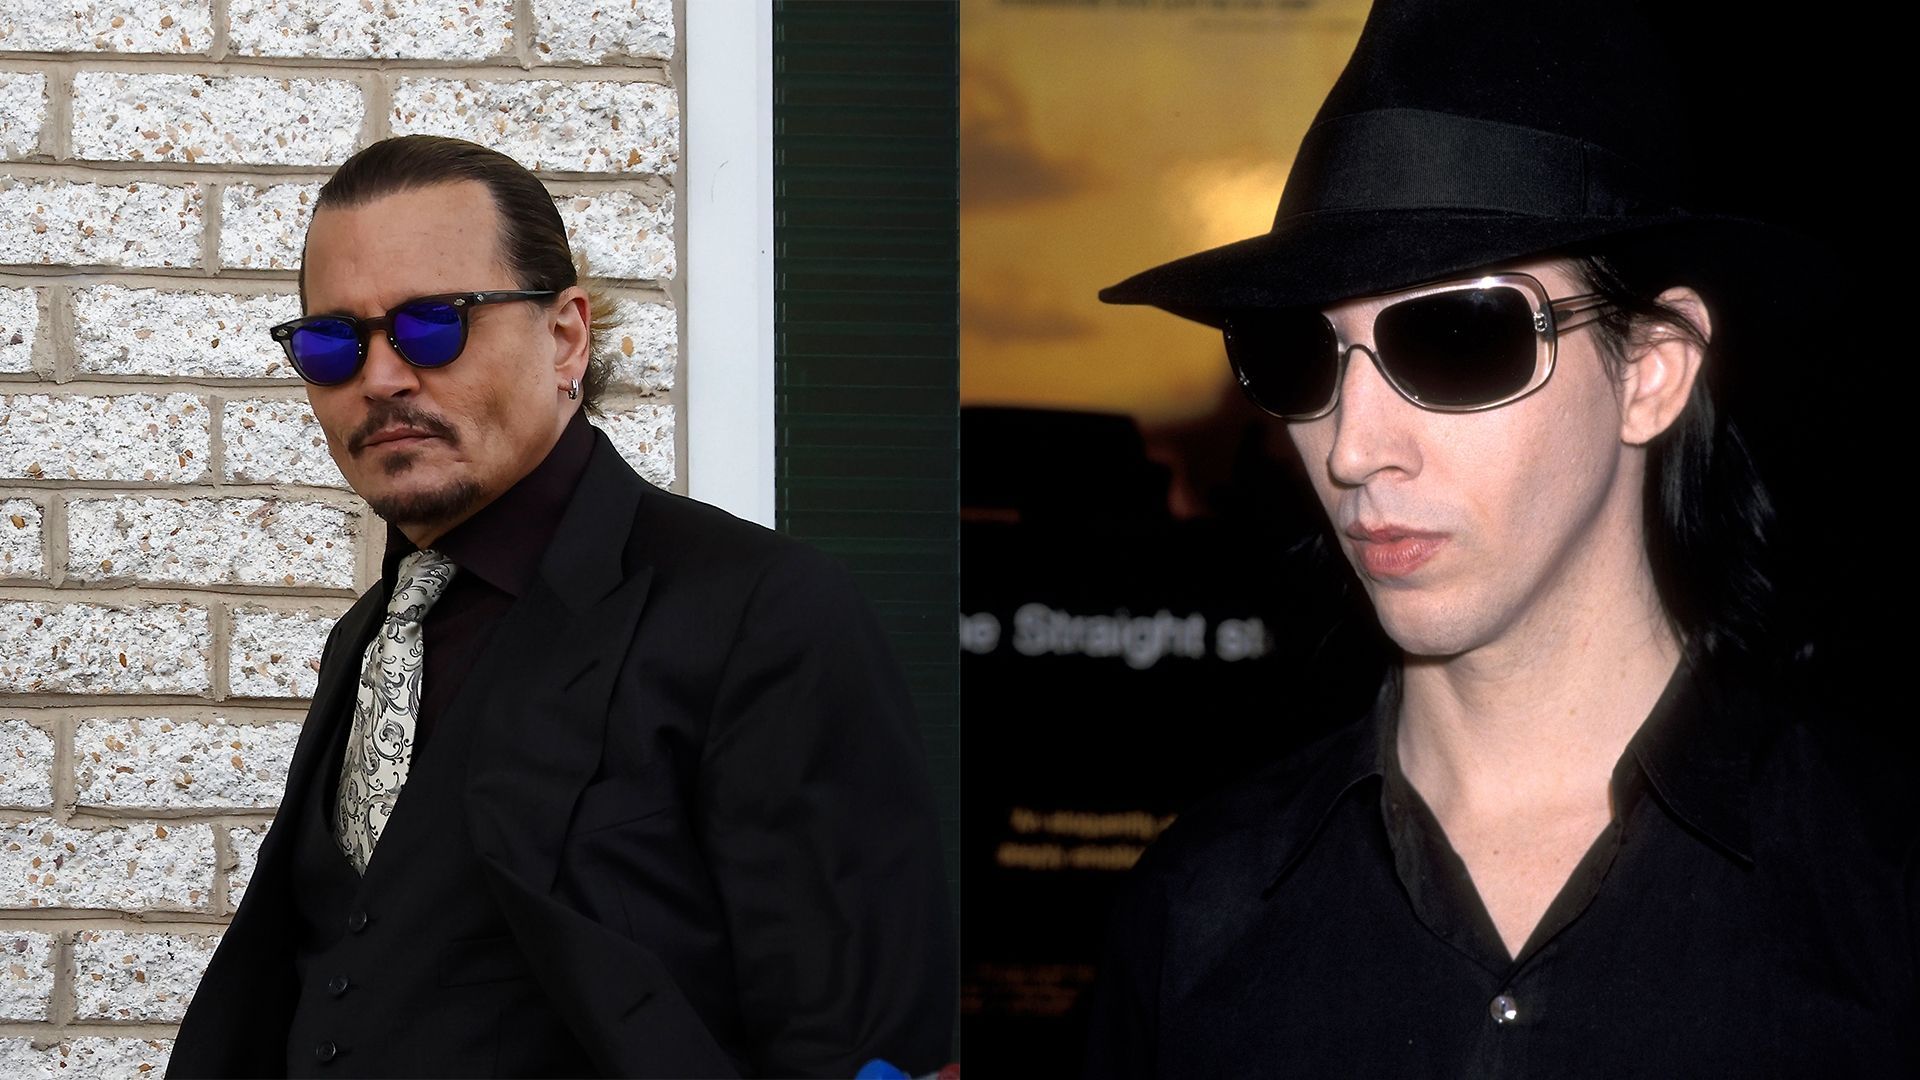 Johnny Depp / Marilyn Manson